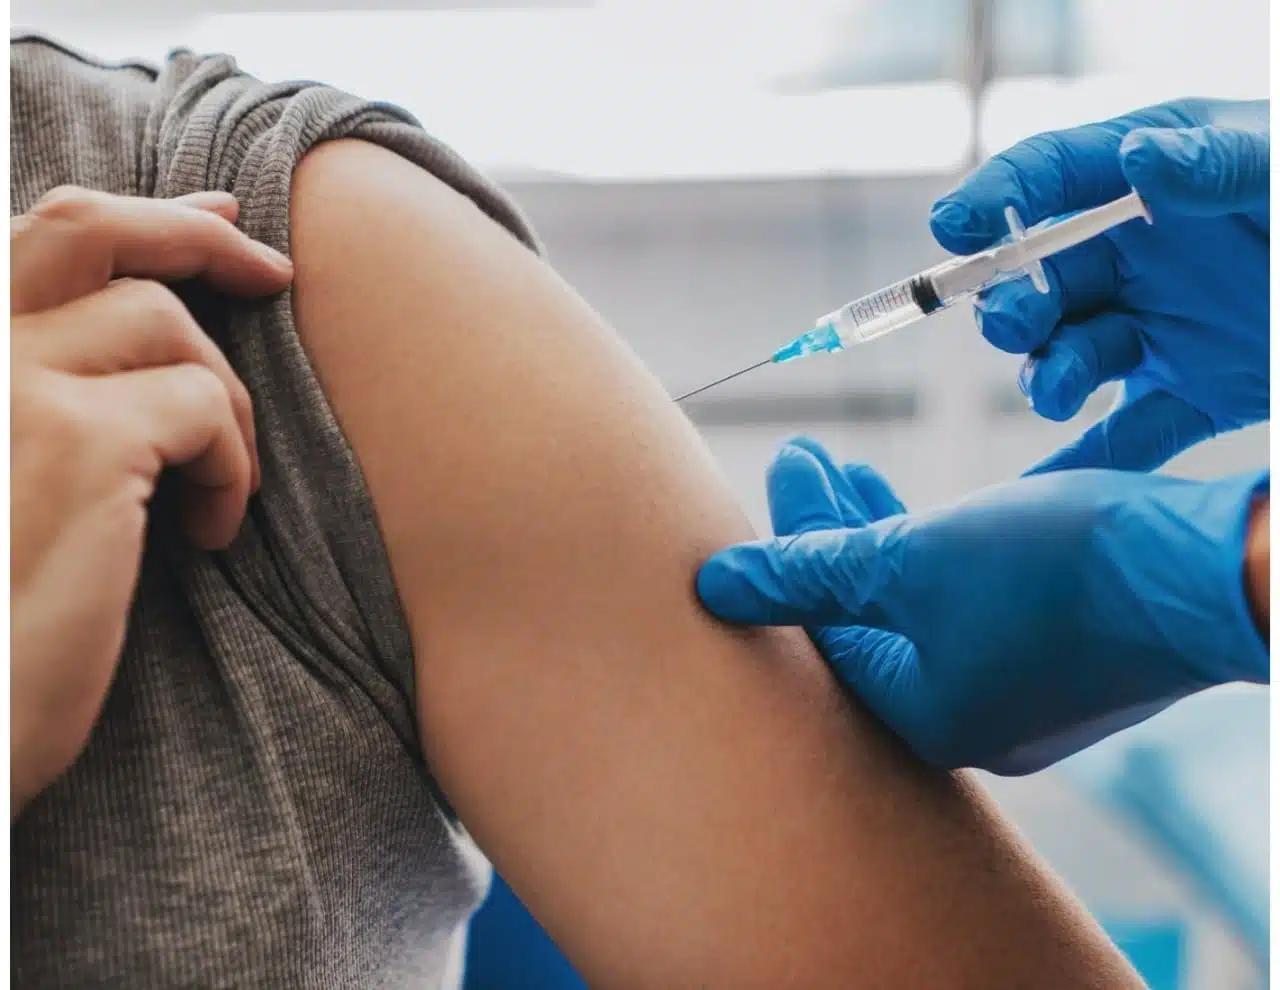 enfermera vacunando brazo